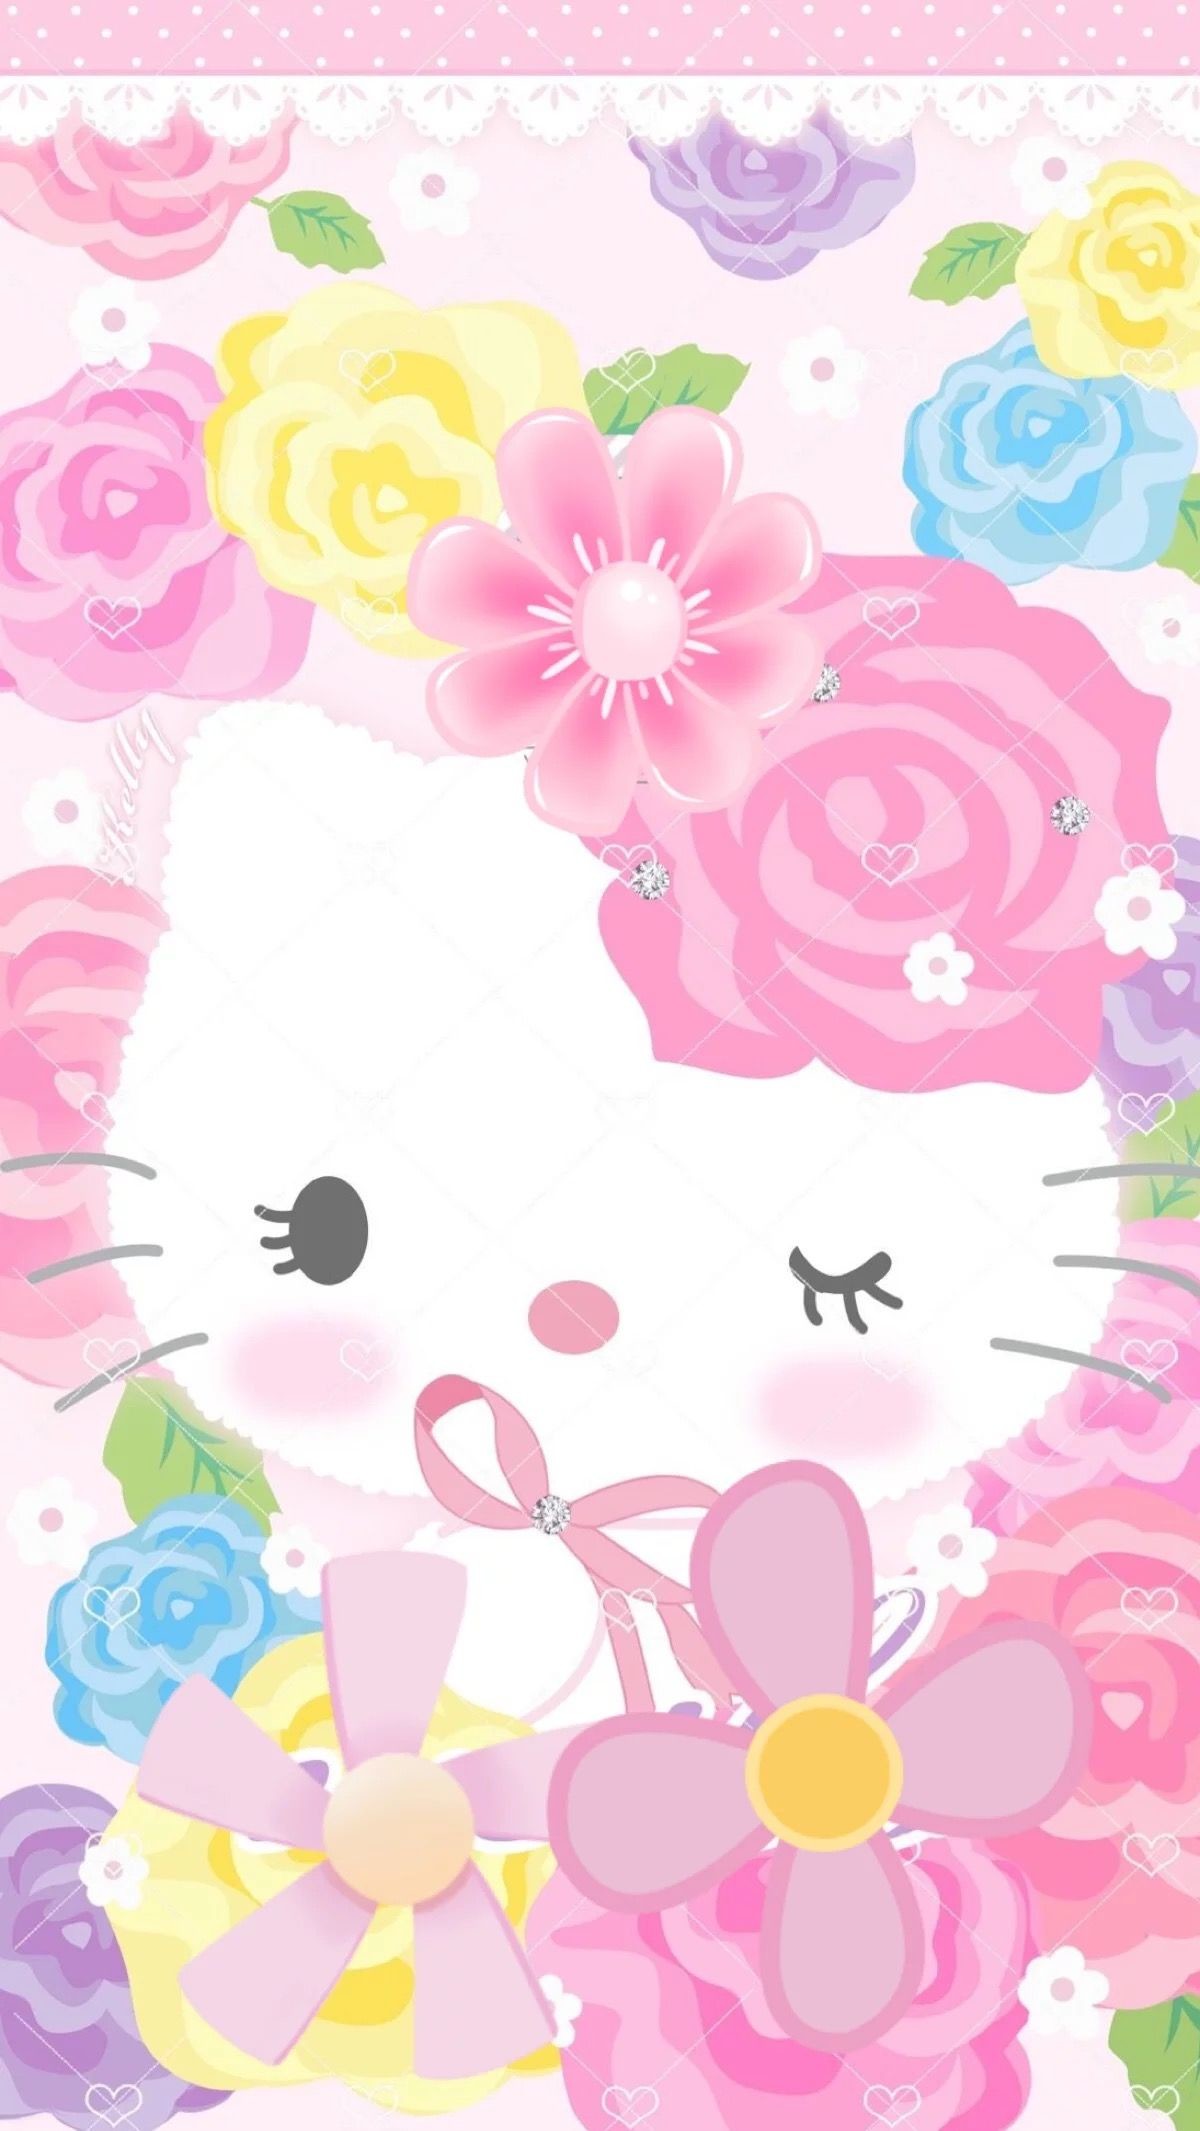 Hello Kitty Hello Kitty Backgrounds, Hello Kitty Wallpaper, - Cute Wallpaper Hello Kitty - HD Wallpaper 